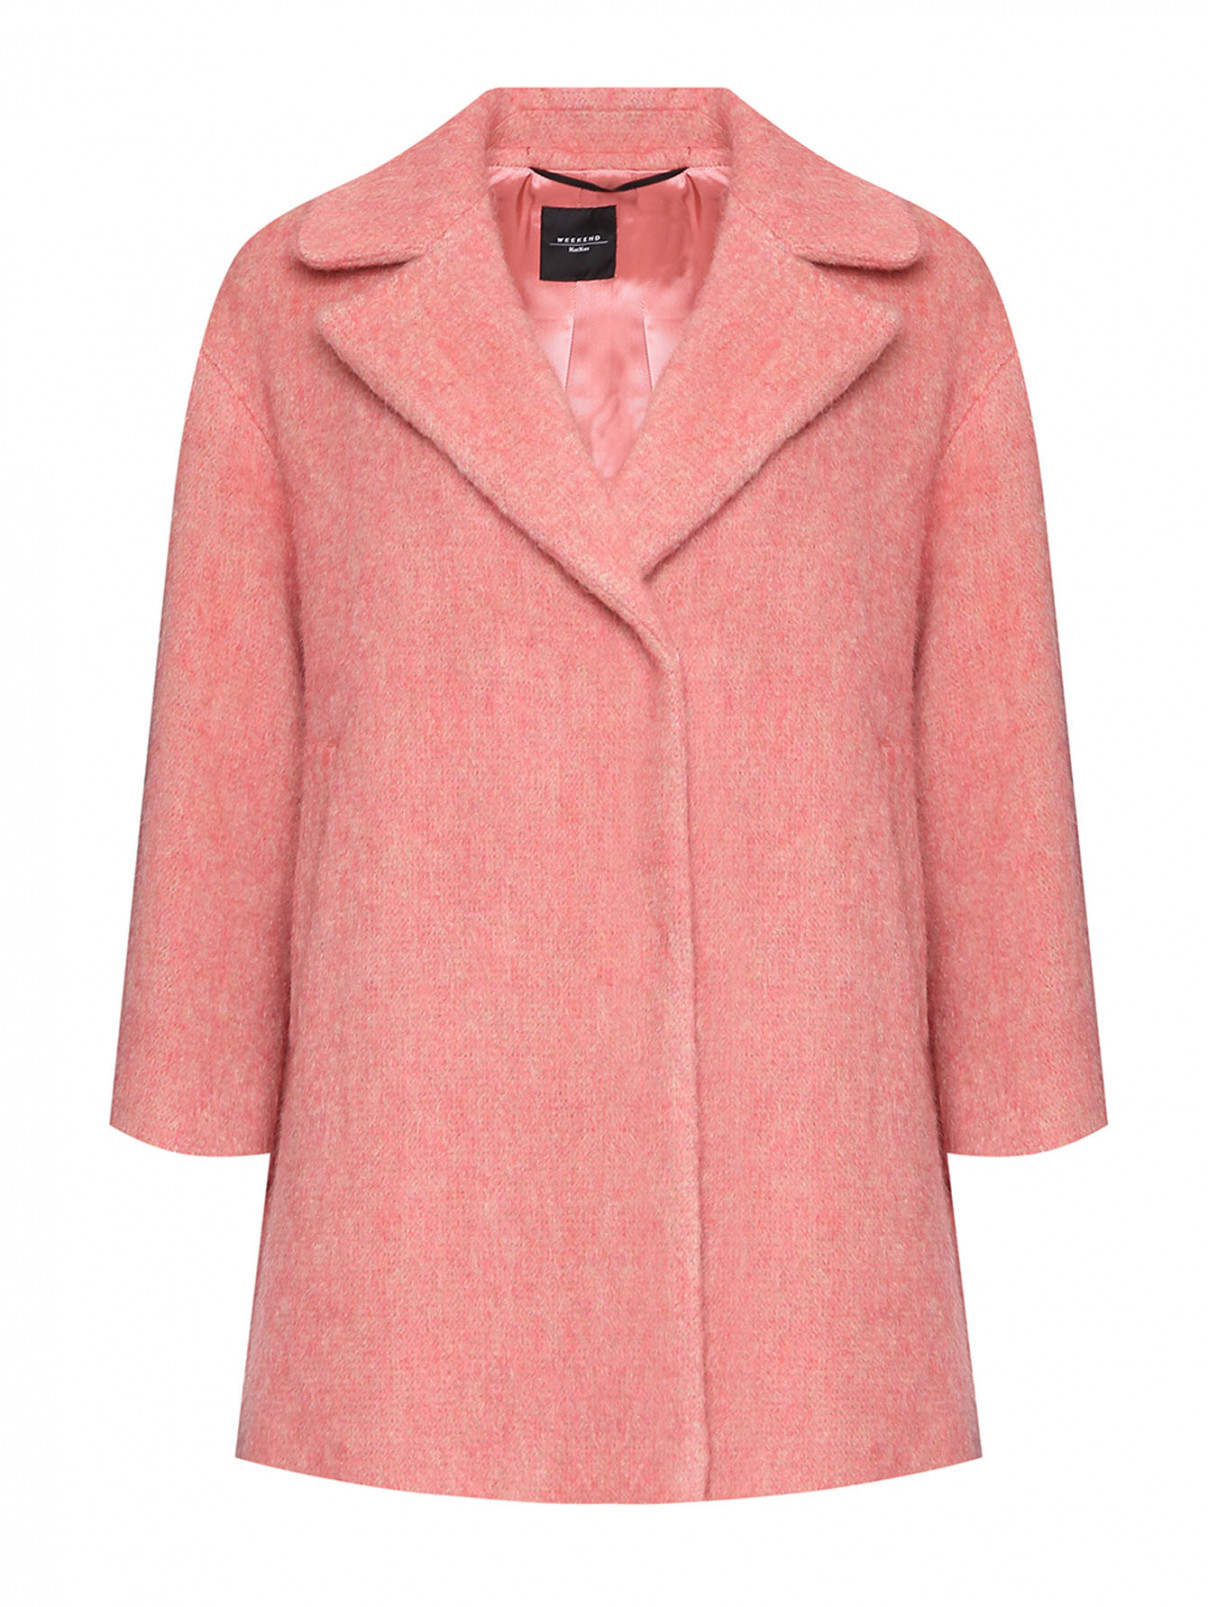 Пальто из шерсти и мохера с карманами Weekend Max Mara  –  Общий вид  – Цвет:  Розовый